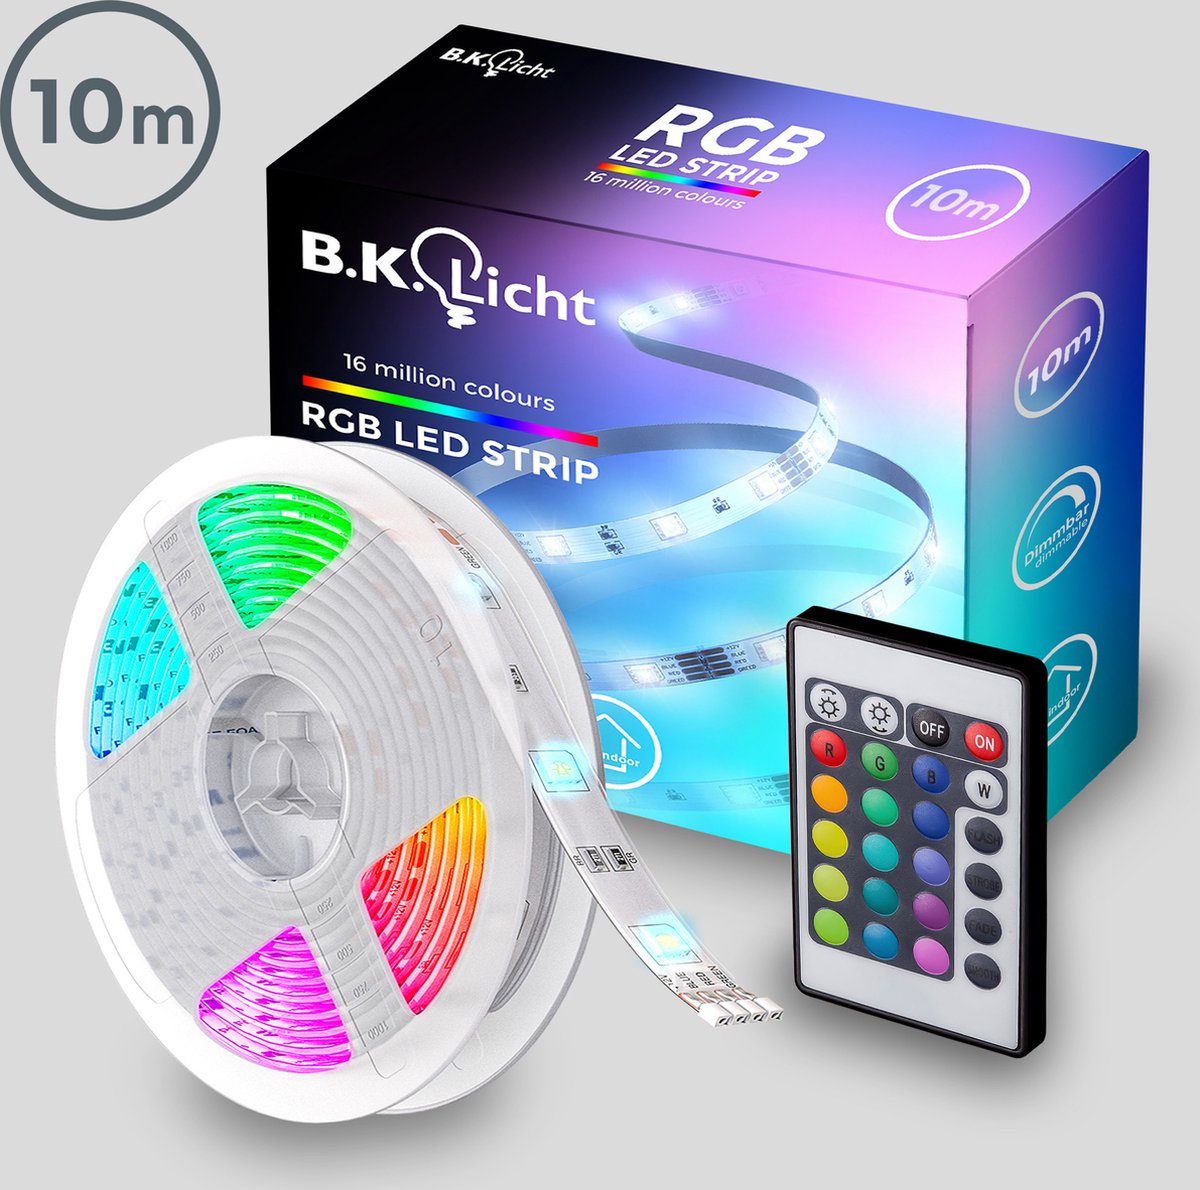 B.K.Licht – LED Strip 10 meter – Light strip – RGB LED Verlichting – met afstandsbediening – licht strip dimbaar – gaming accesoires - B.K.Licht